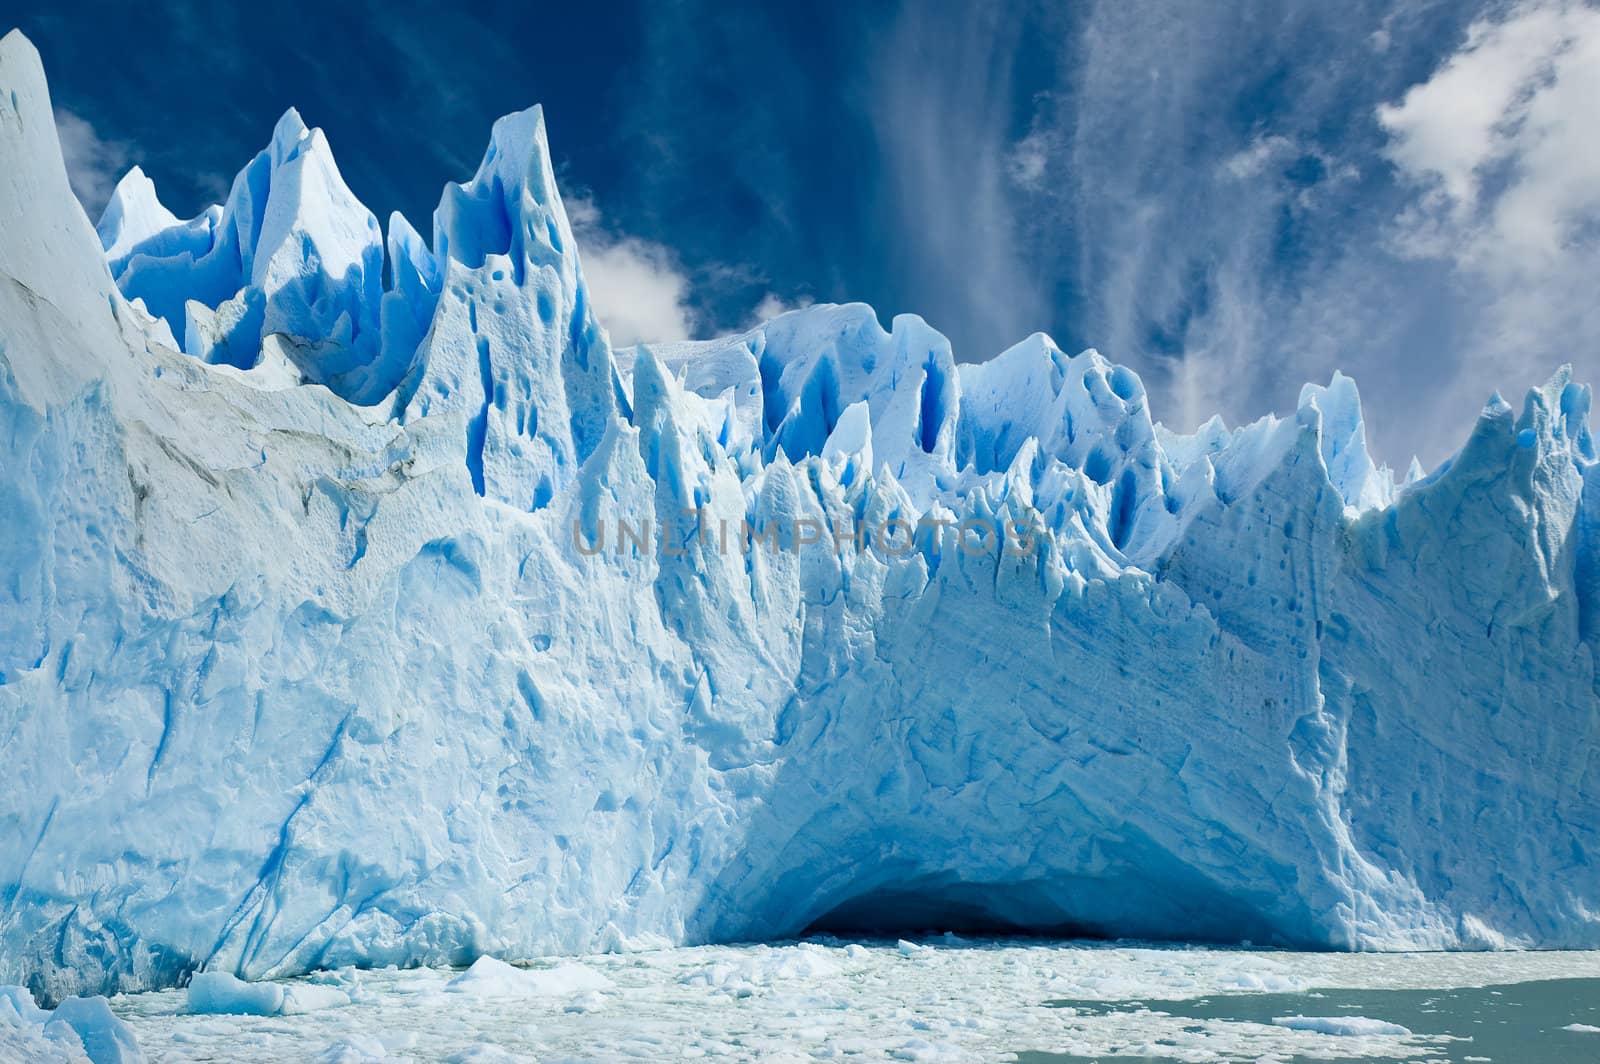 Cave in the ice, Perito Moreno glacier, Patagonia Argentina.